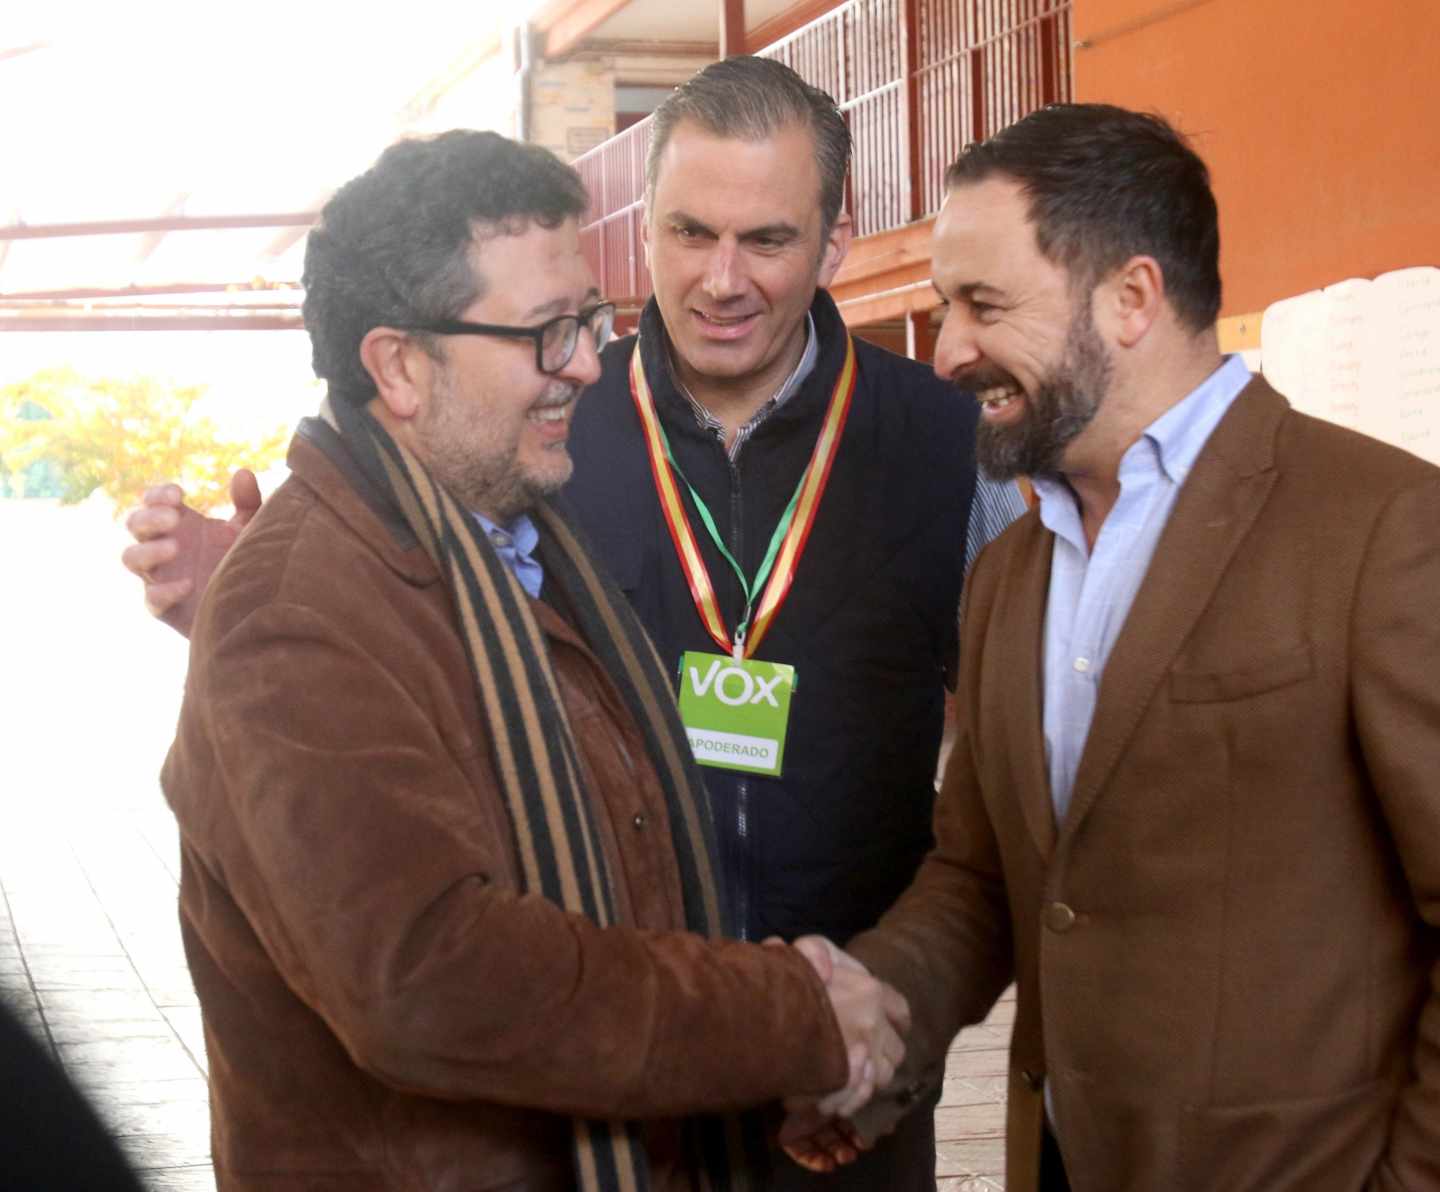 Santiago Abascal y Francisco Serrano se estrechan las manos en presencia de Javier Ortega.